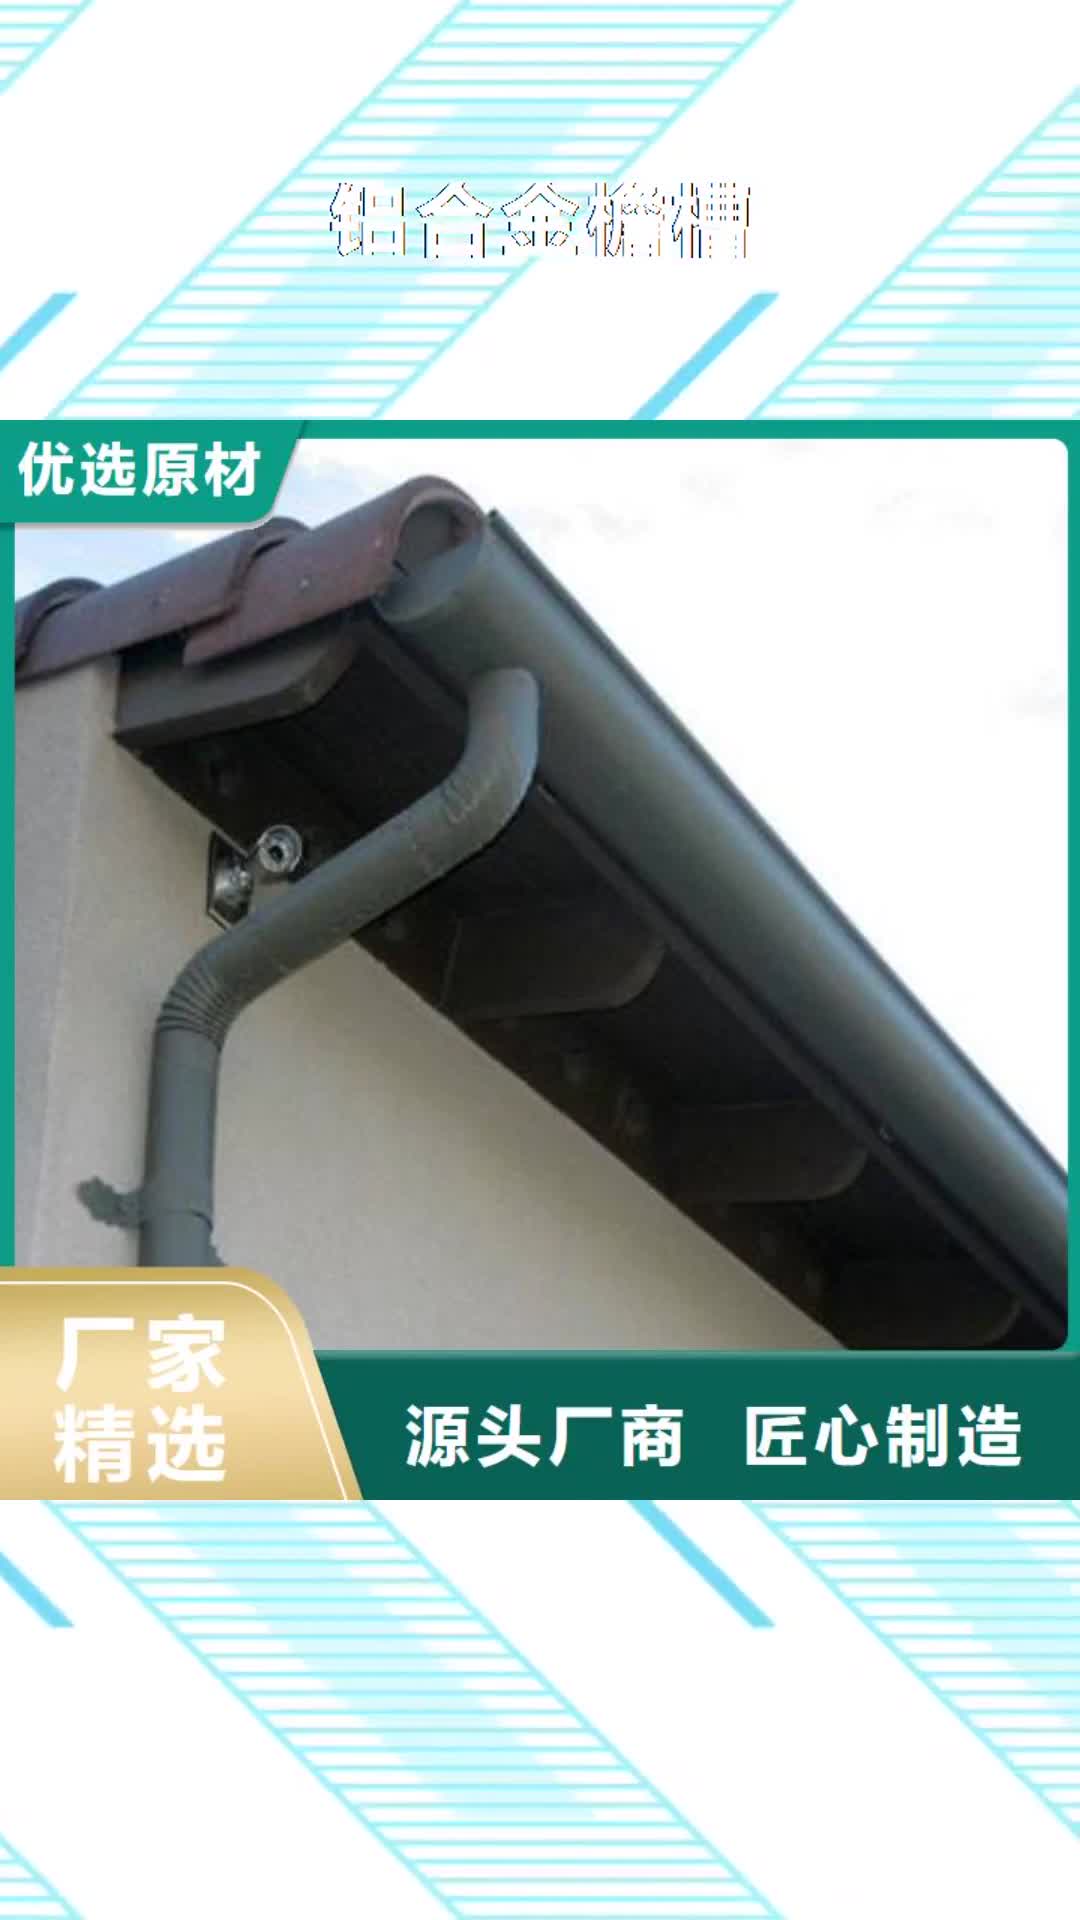 沈阳【铝合金檐槽】,PVC雨水管用心制作